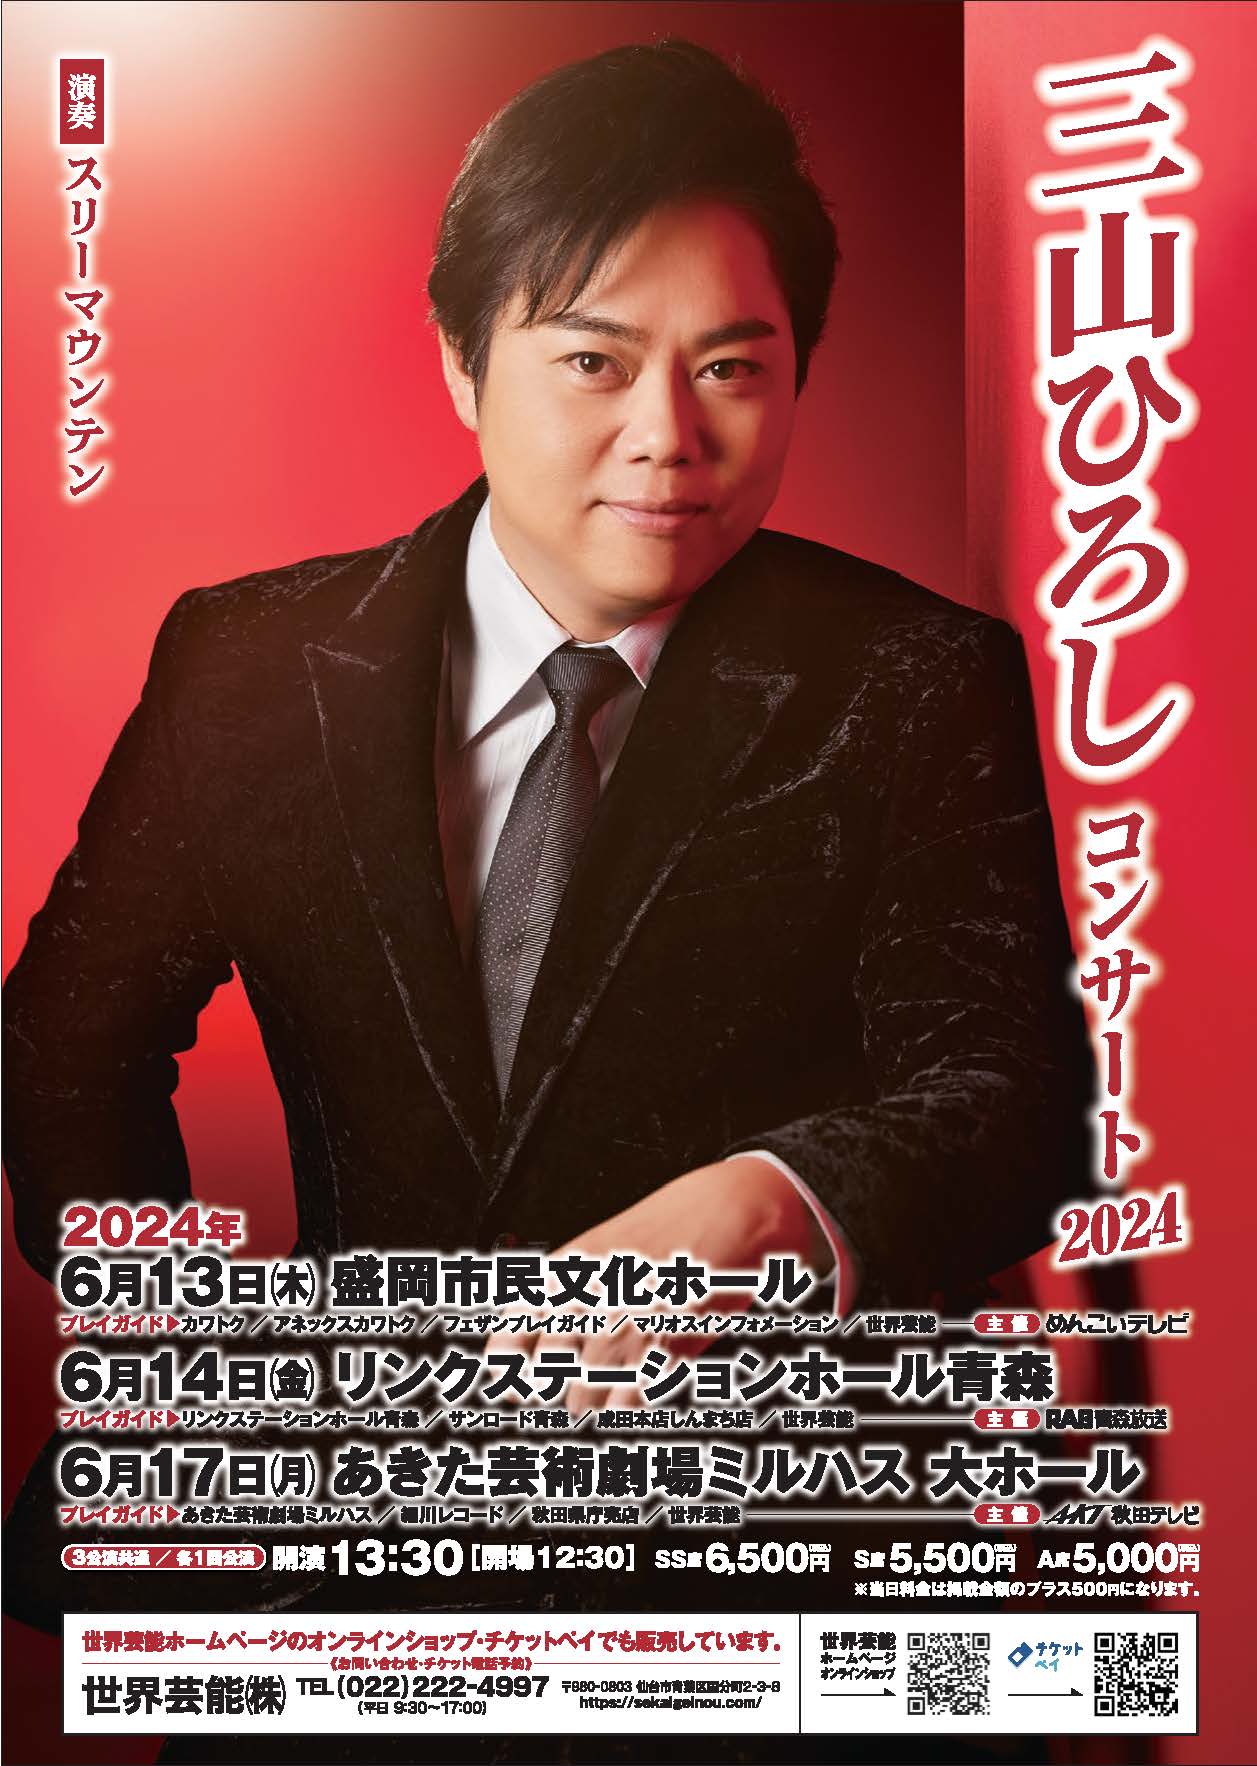 「三山ひろしコンサート2024」のポスター